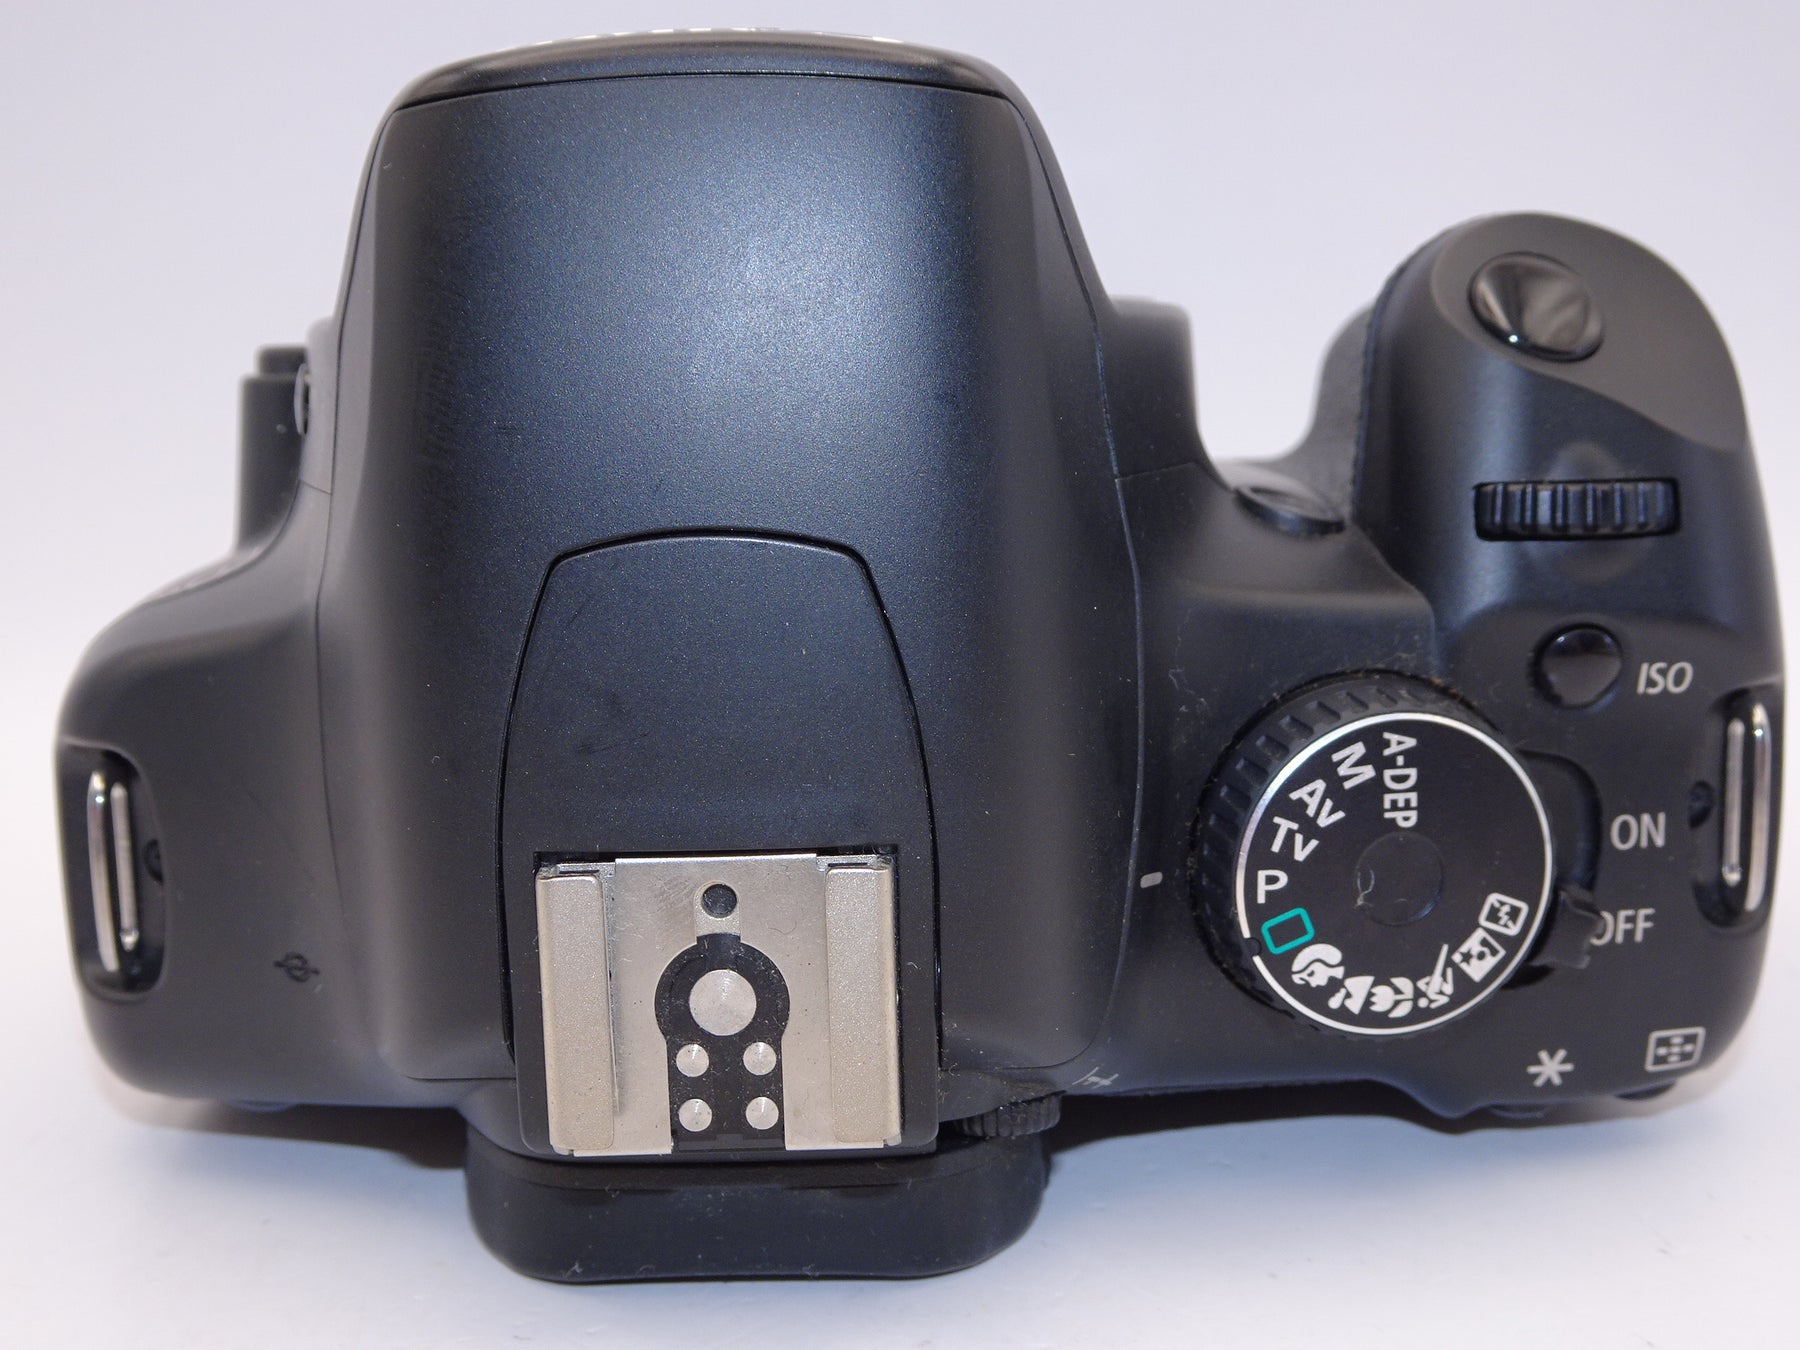 【外観並級】Canon デジタル一眼レフカメラ EOS Kiss X2 ボディ KISSX2-BODY